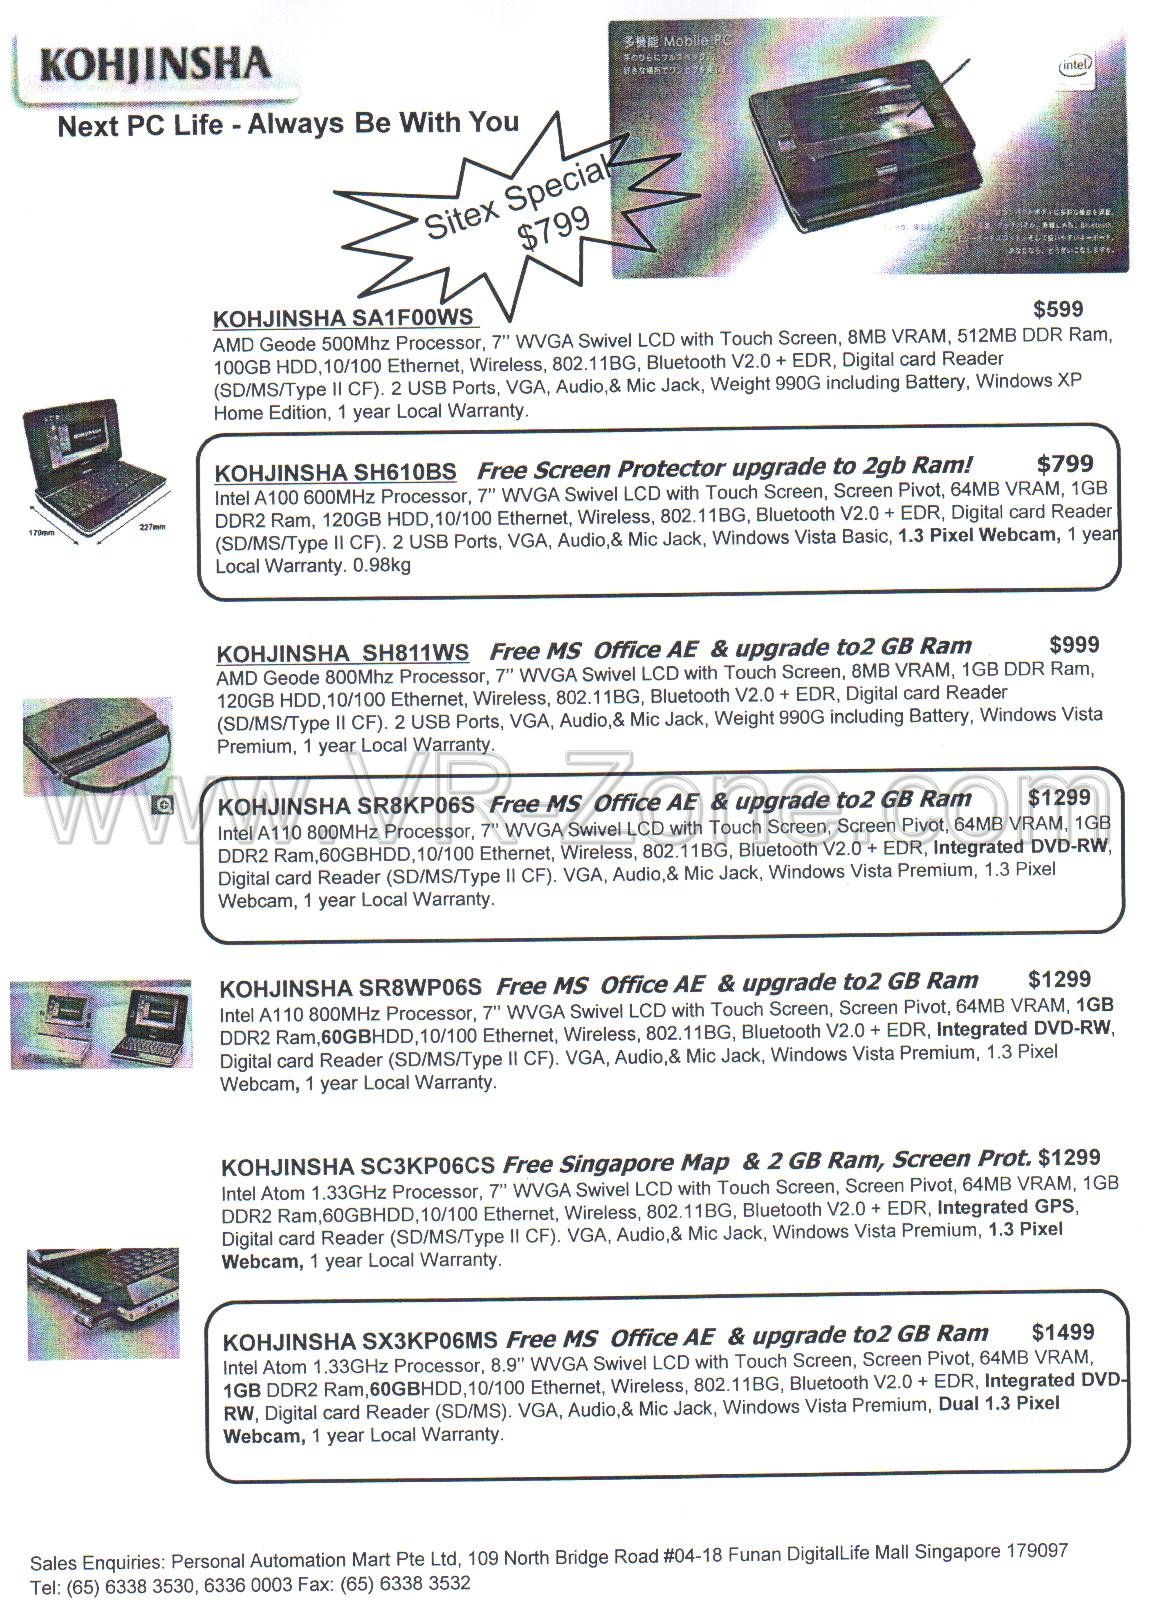 Sitex 2008 price list image brochure of Kohjinsha